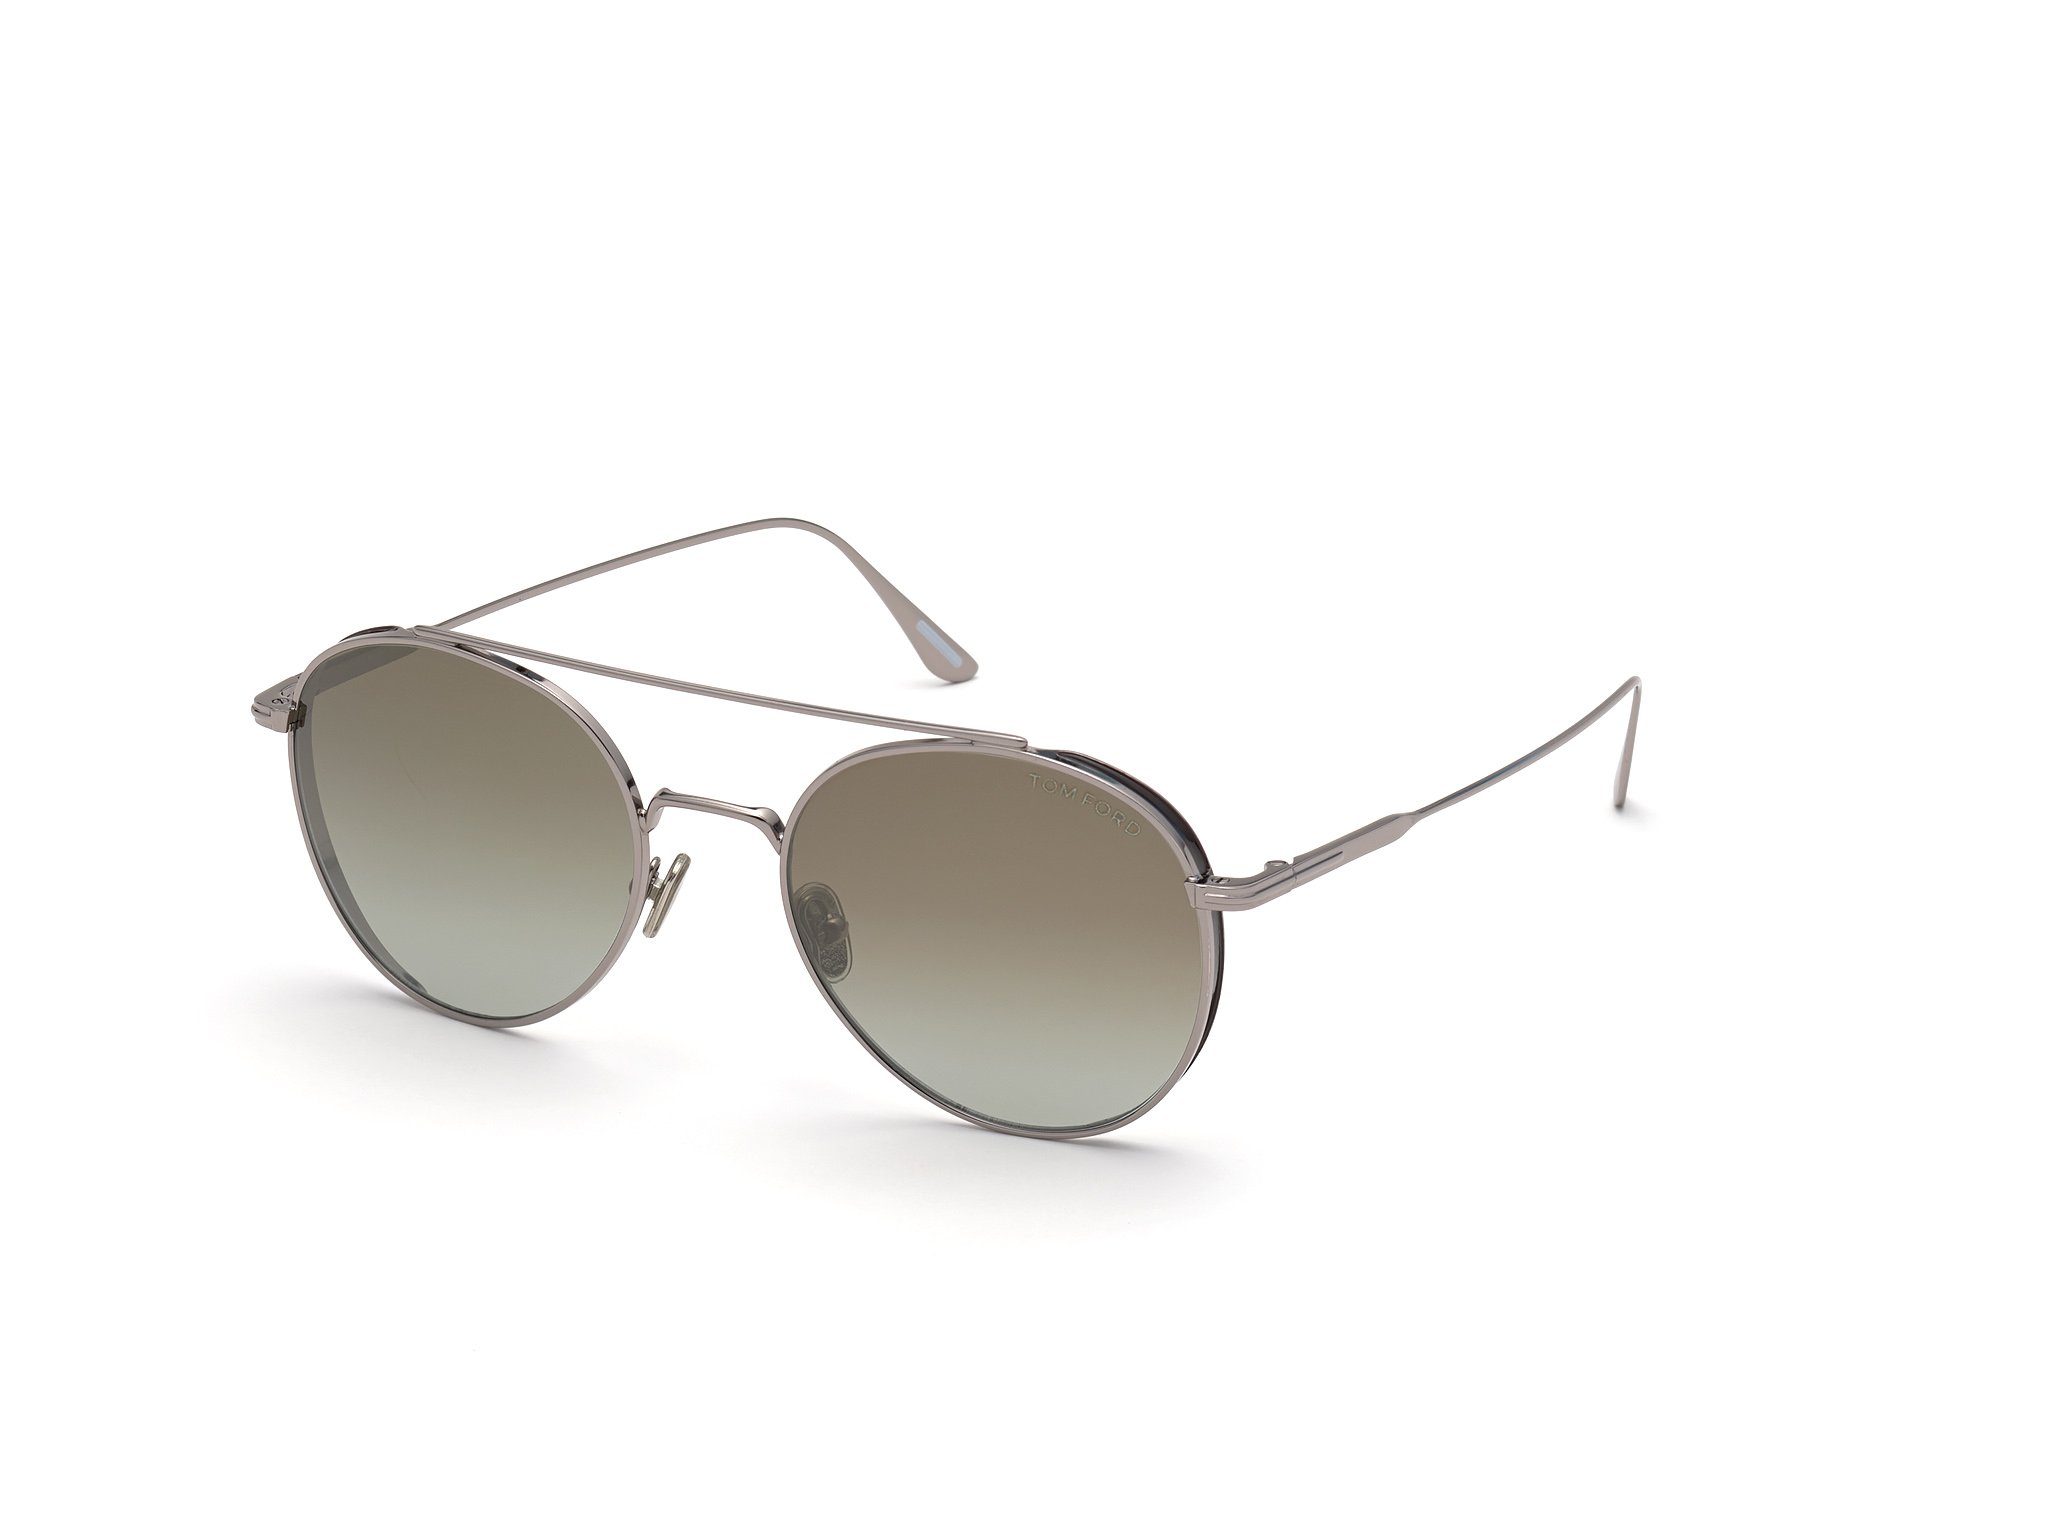 Das Bild zeigt die Sonnenbrille Declan FT0826 von der Marke Tom Ford in grau